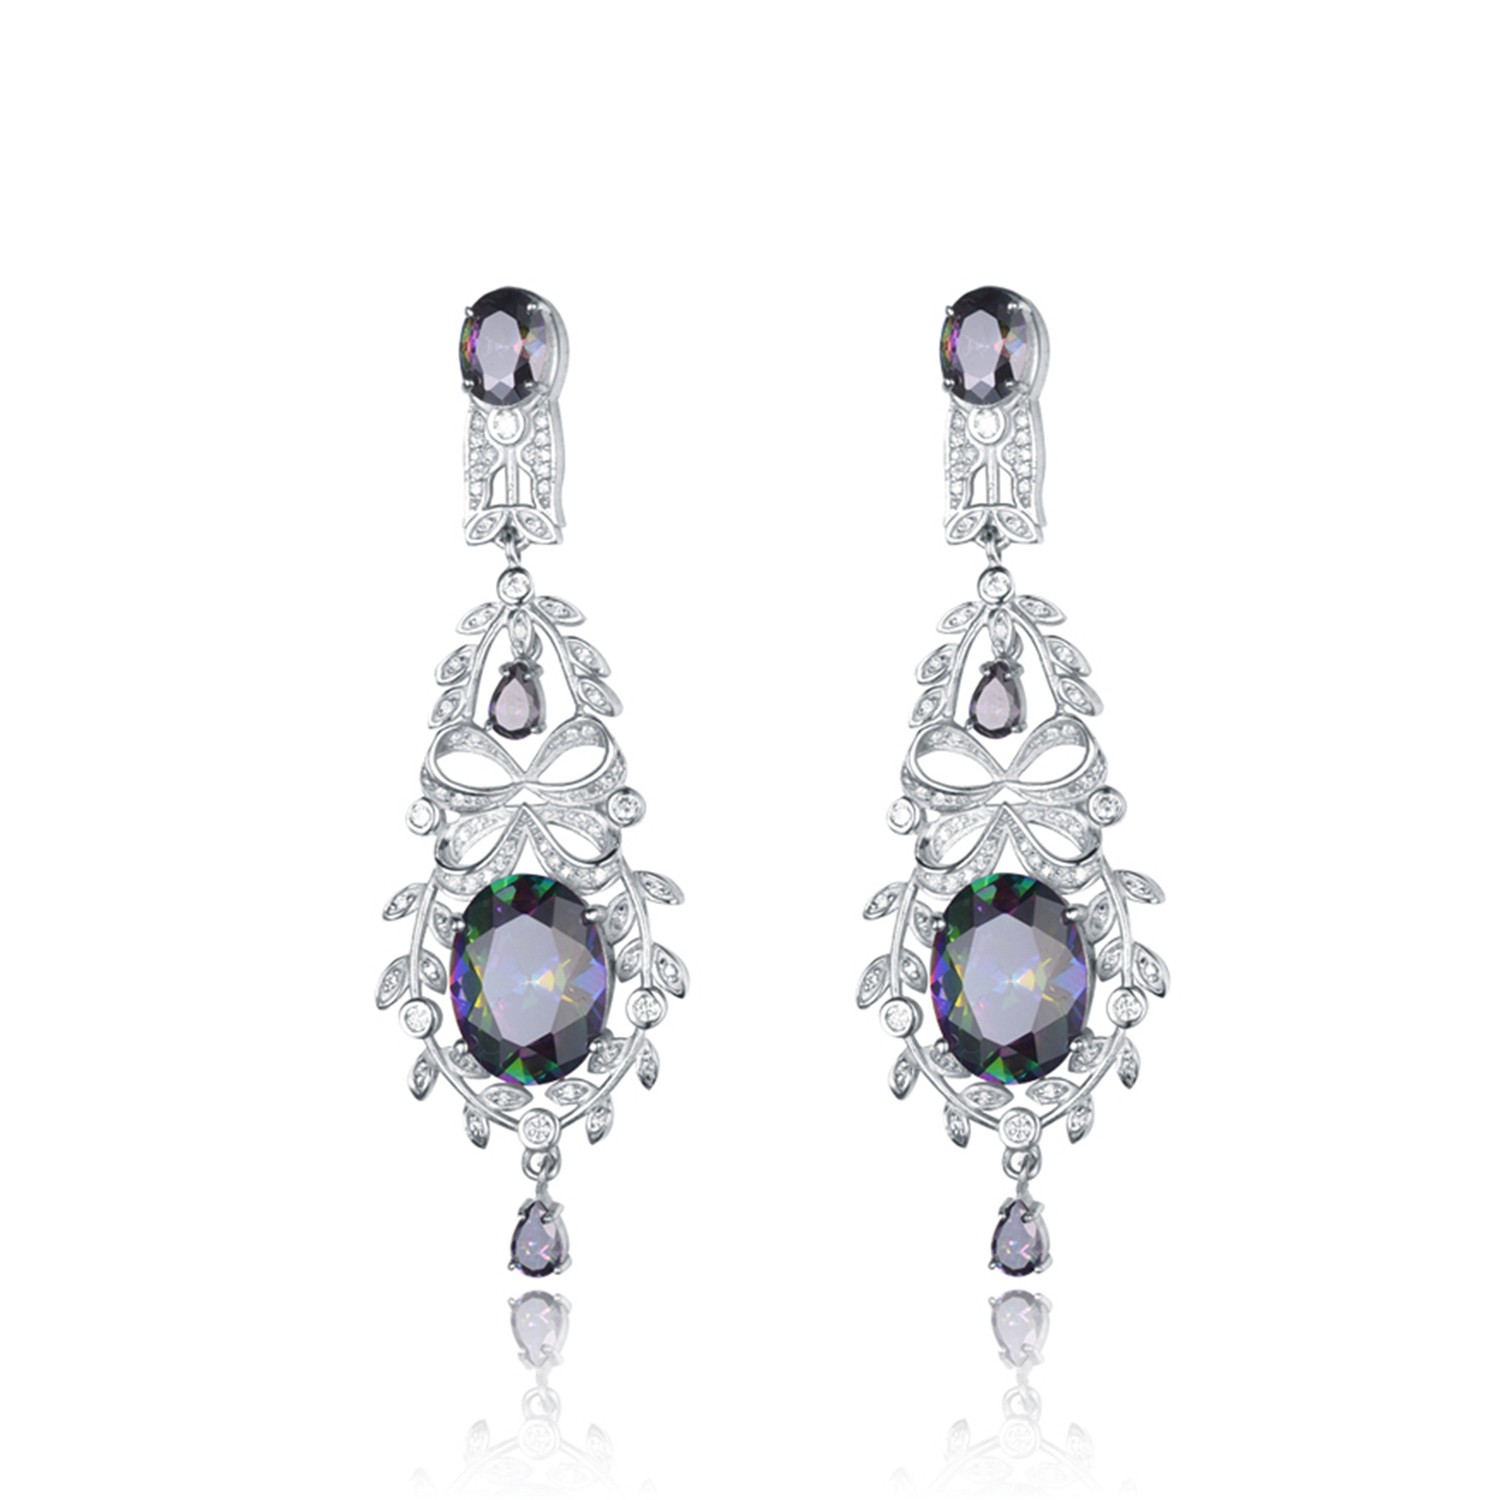 Cubic Zirconia jewelry silver plated earrings women hot sale drop earrings